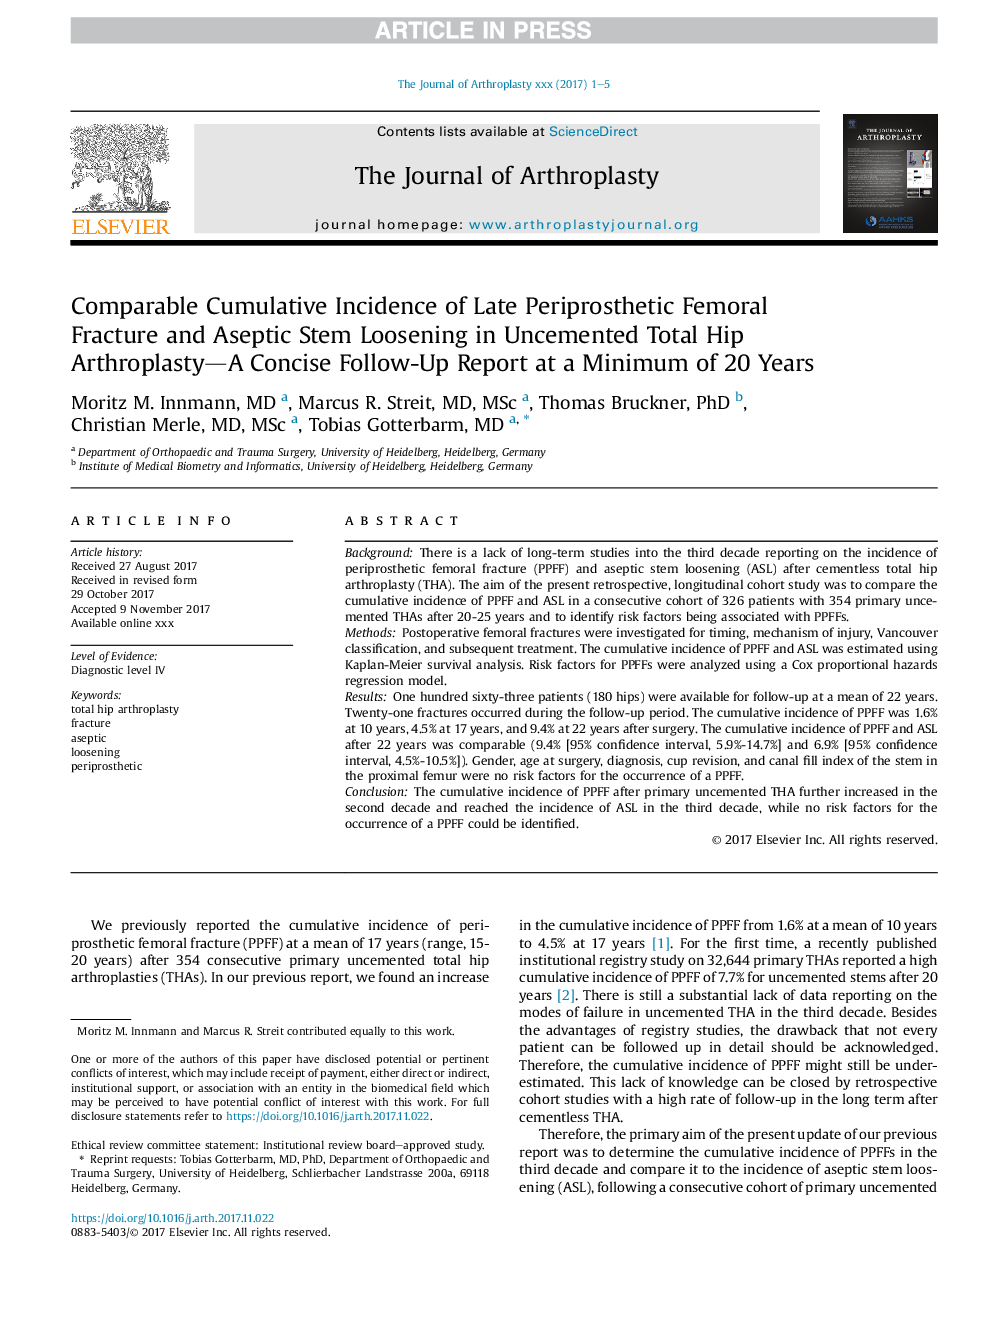 مقایسه میزان بروز تجمعی شکستگی فمورال پس از پری پروستات و بیدردگی ساقه آسپتیک در آرتروپلاستی هیپ آمپرمی شده بدون پیچیدگی - یک گزارش پیگیری مختصر در حداقل 20 سال 